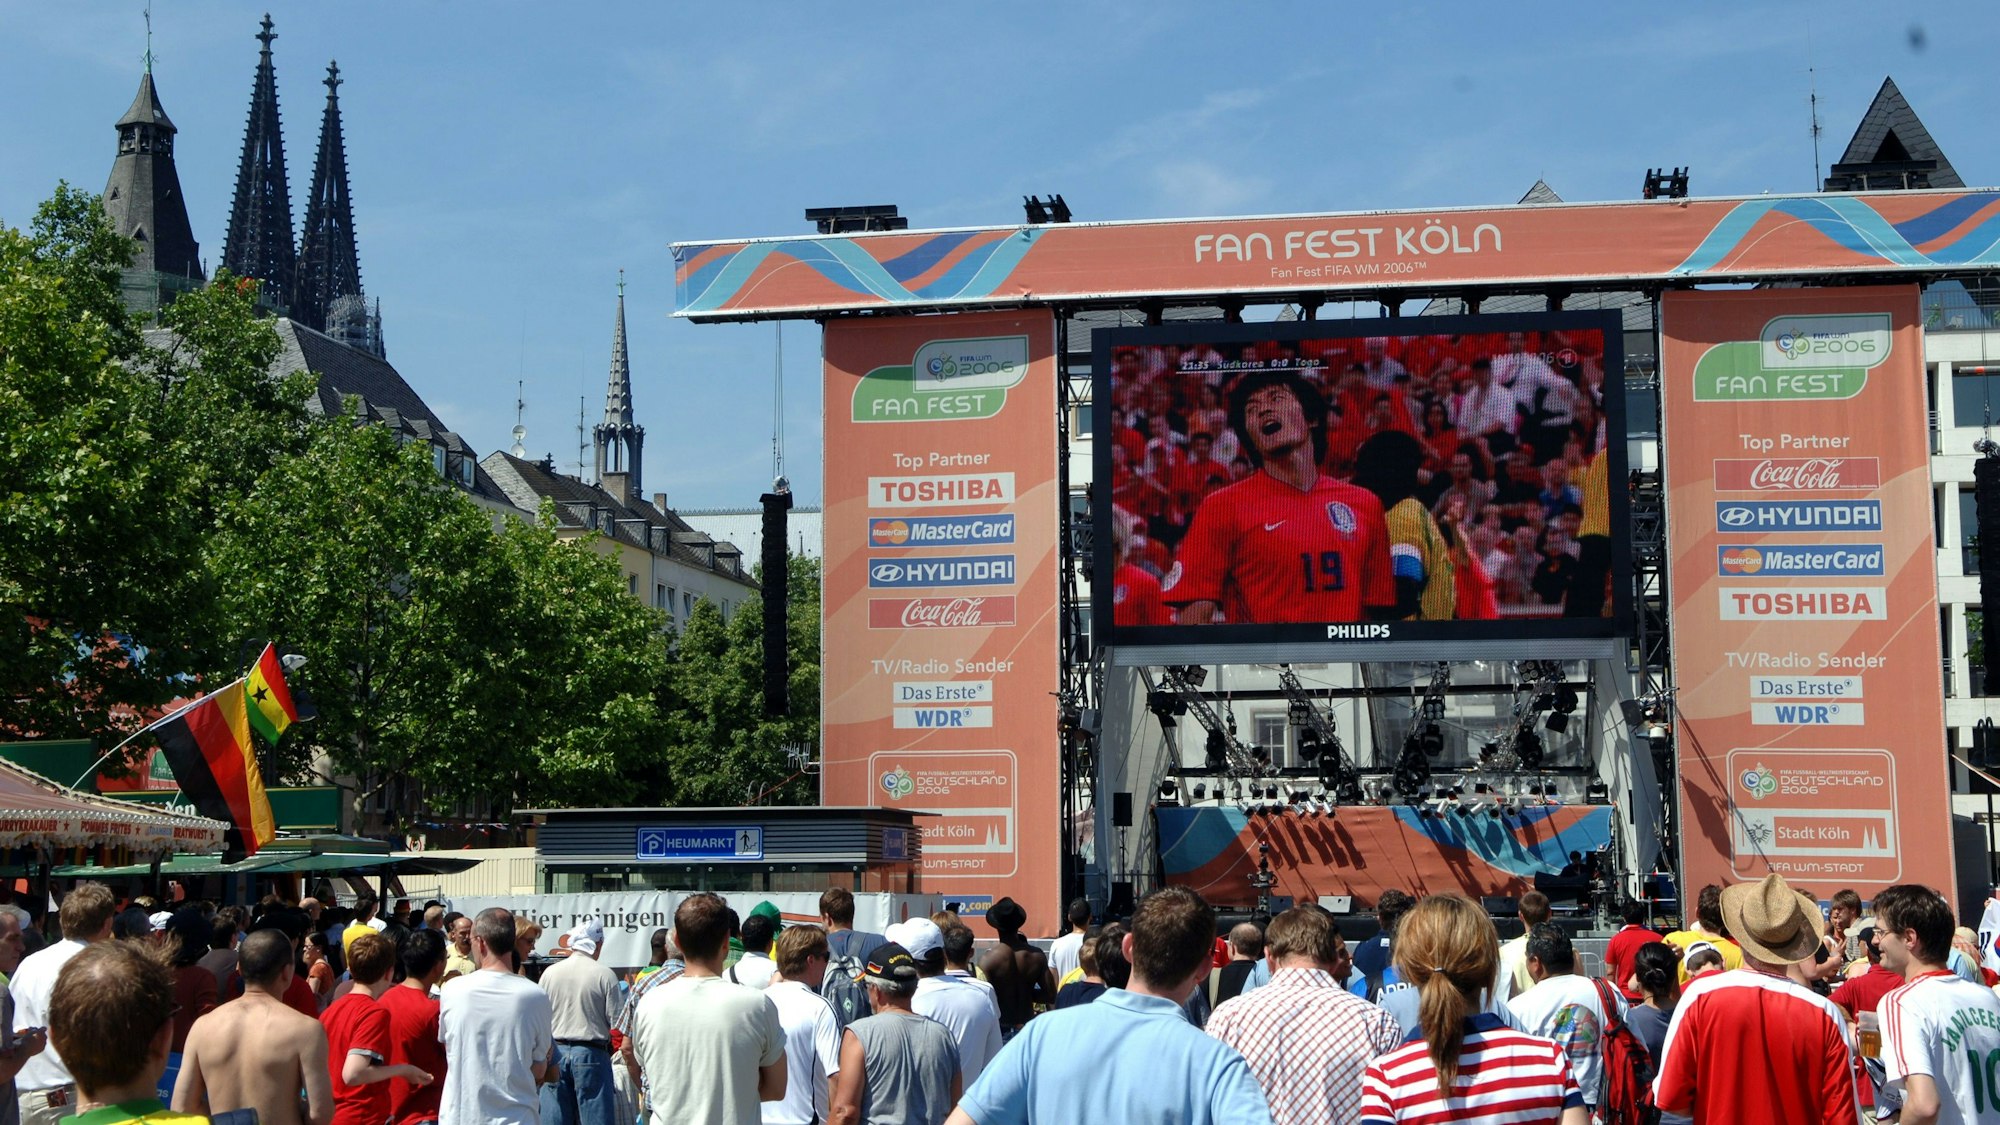 Eine große Bühne ist auf dem Heumarkt aufgebaut. Auf einer Videoleinwand wird ein Fan bei einem Fußballspiel gezeigt, darüber steht „Fan Fest Köln“.